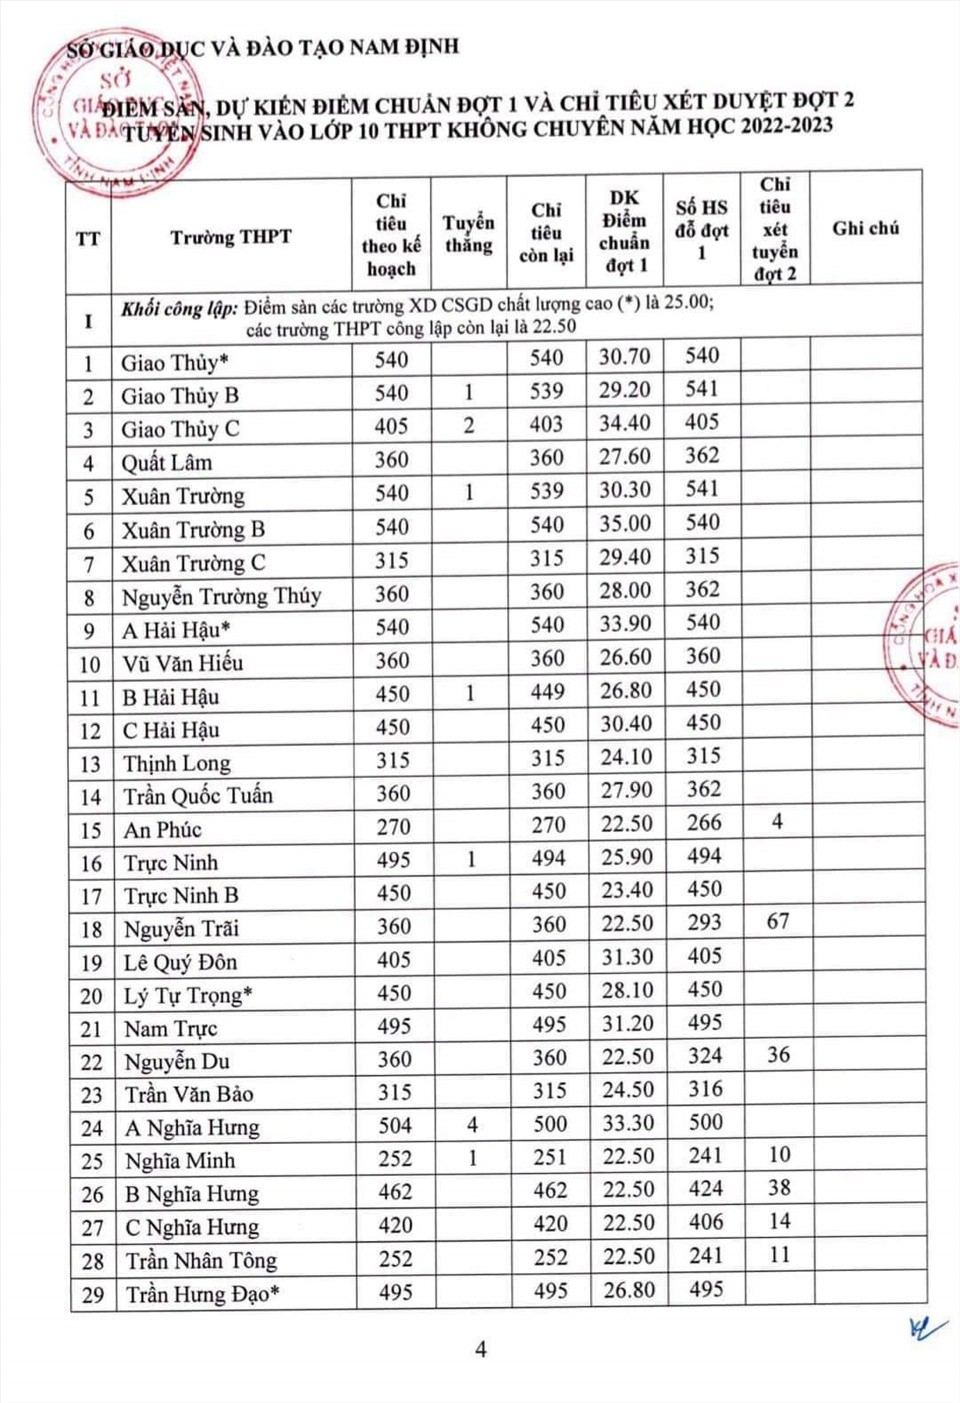 Điểm chuẩn vào lớp 10 tỉnh Nam Định năm 2022